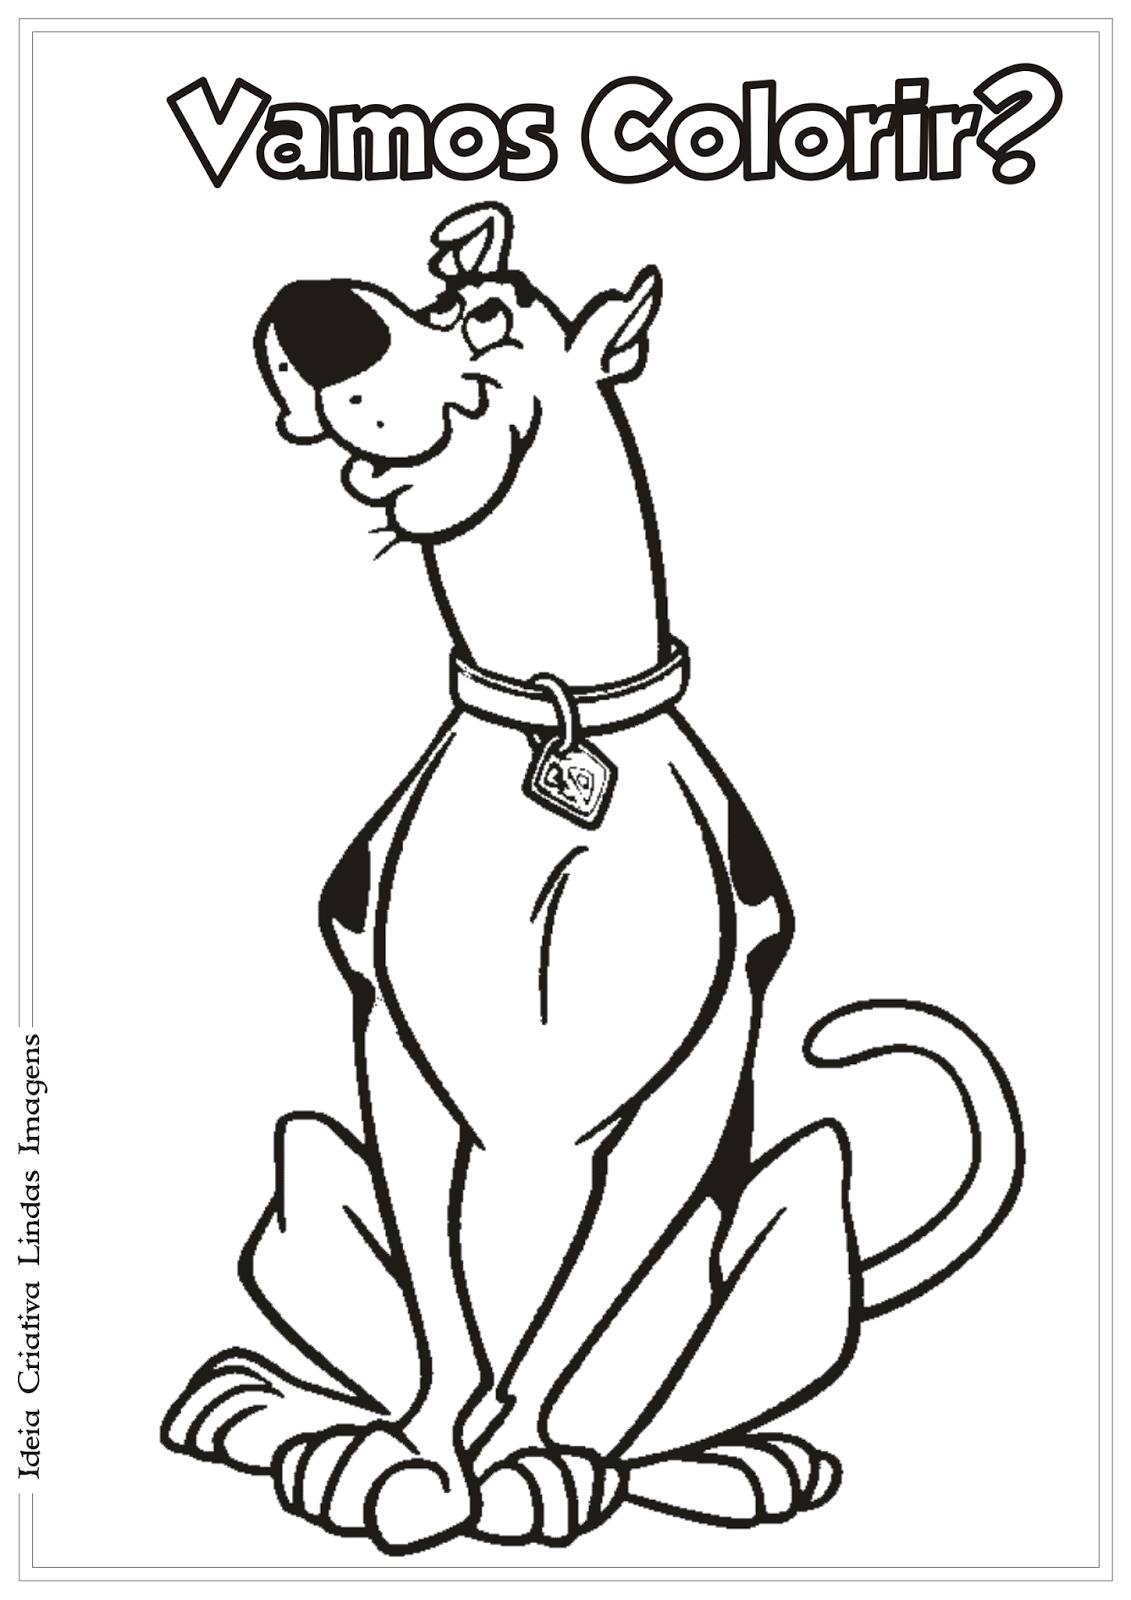 Desenho Pintar Desenhos Do Scooby Doo Para Colorir | Images and Photos ...